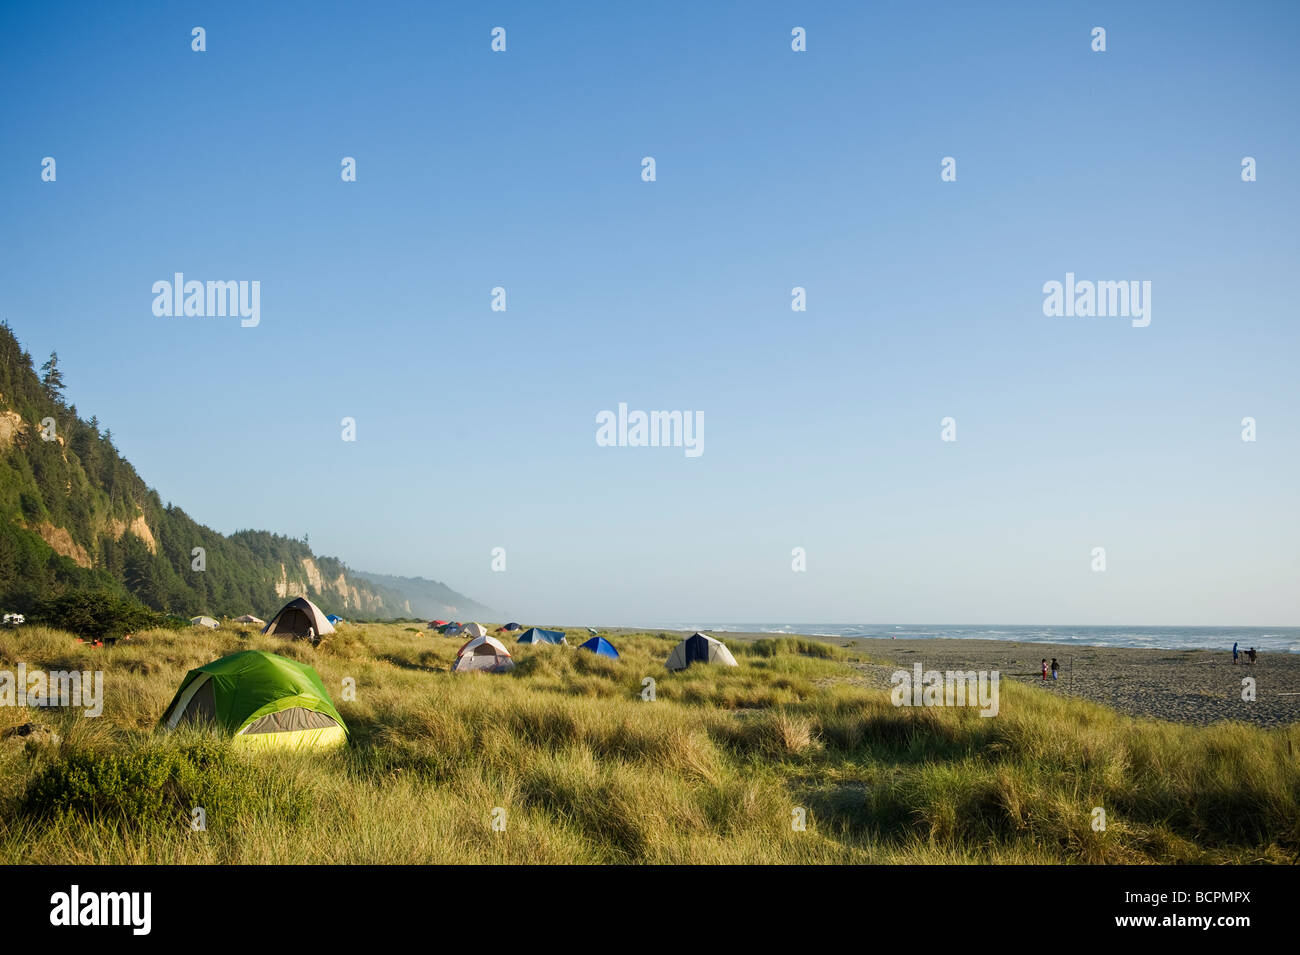 Camping tentes de dunes de sable de plage, falaises d'Or Prairie Creek Redwoods State Park, Californie Banque D'Images